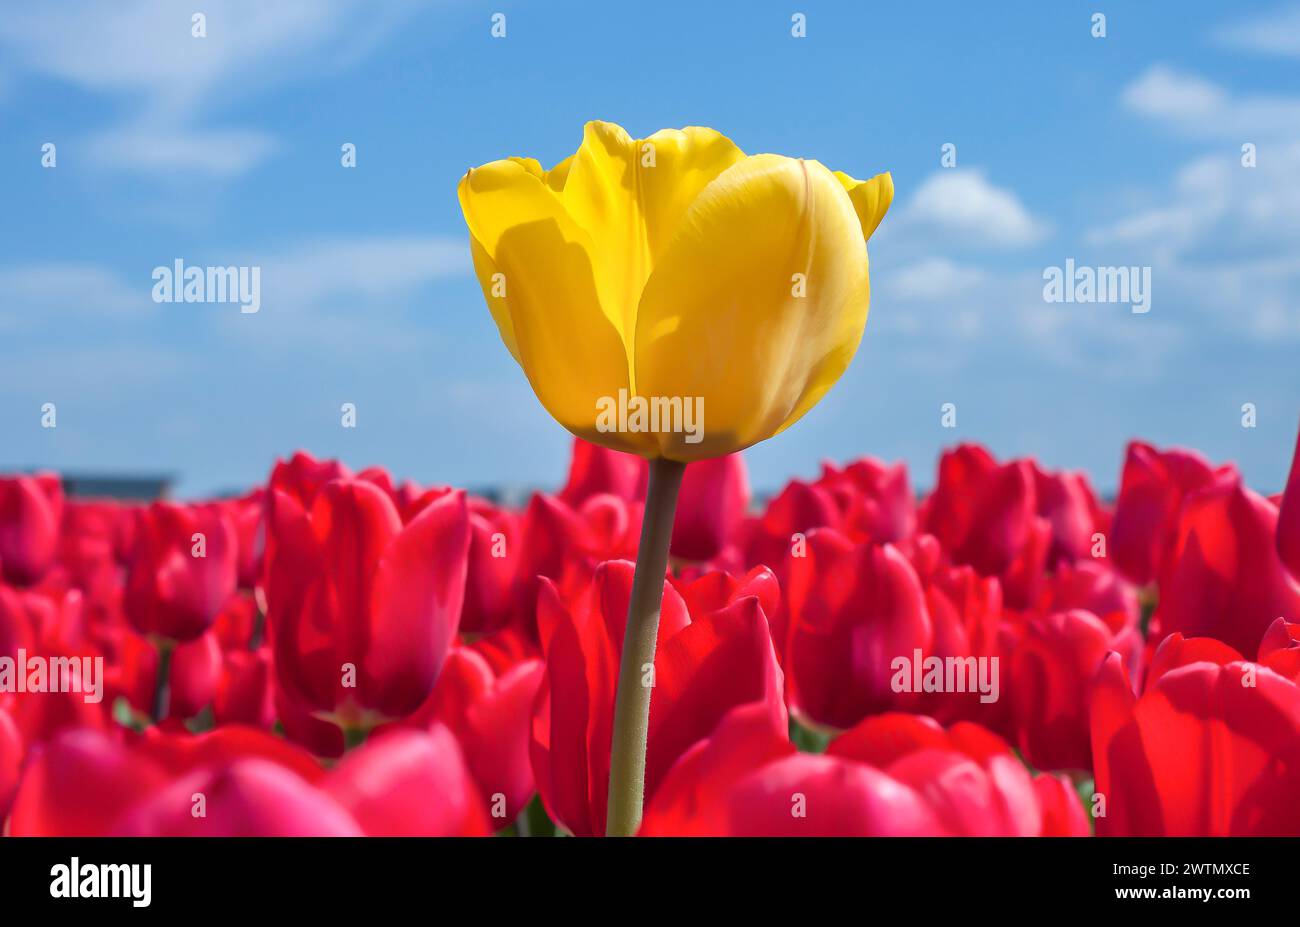 Gelbe Tulpe in einem Blumenbeet aus roten Tulpen vor einem blauen Himmel. Stockfoto